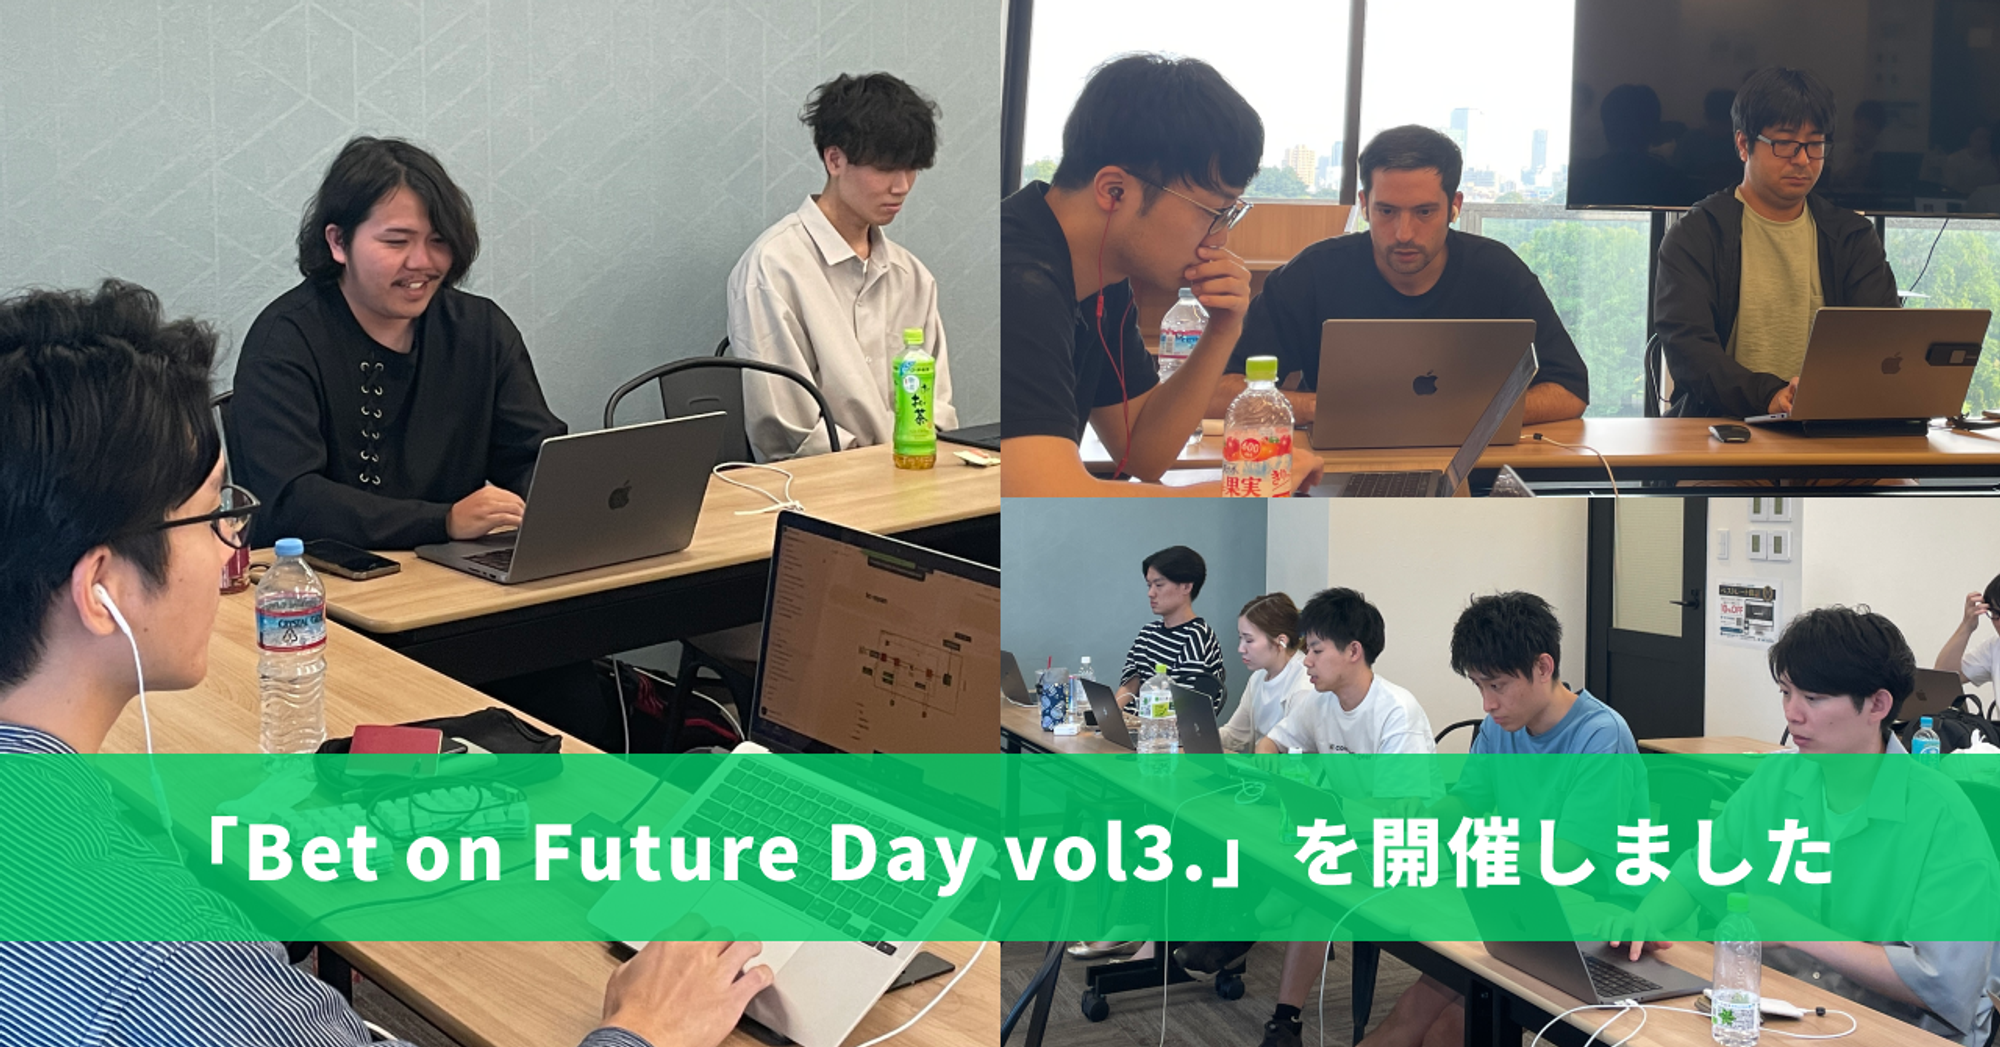 【イベントレポート】Bet on Future Day vol.3